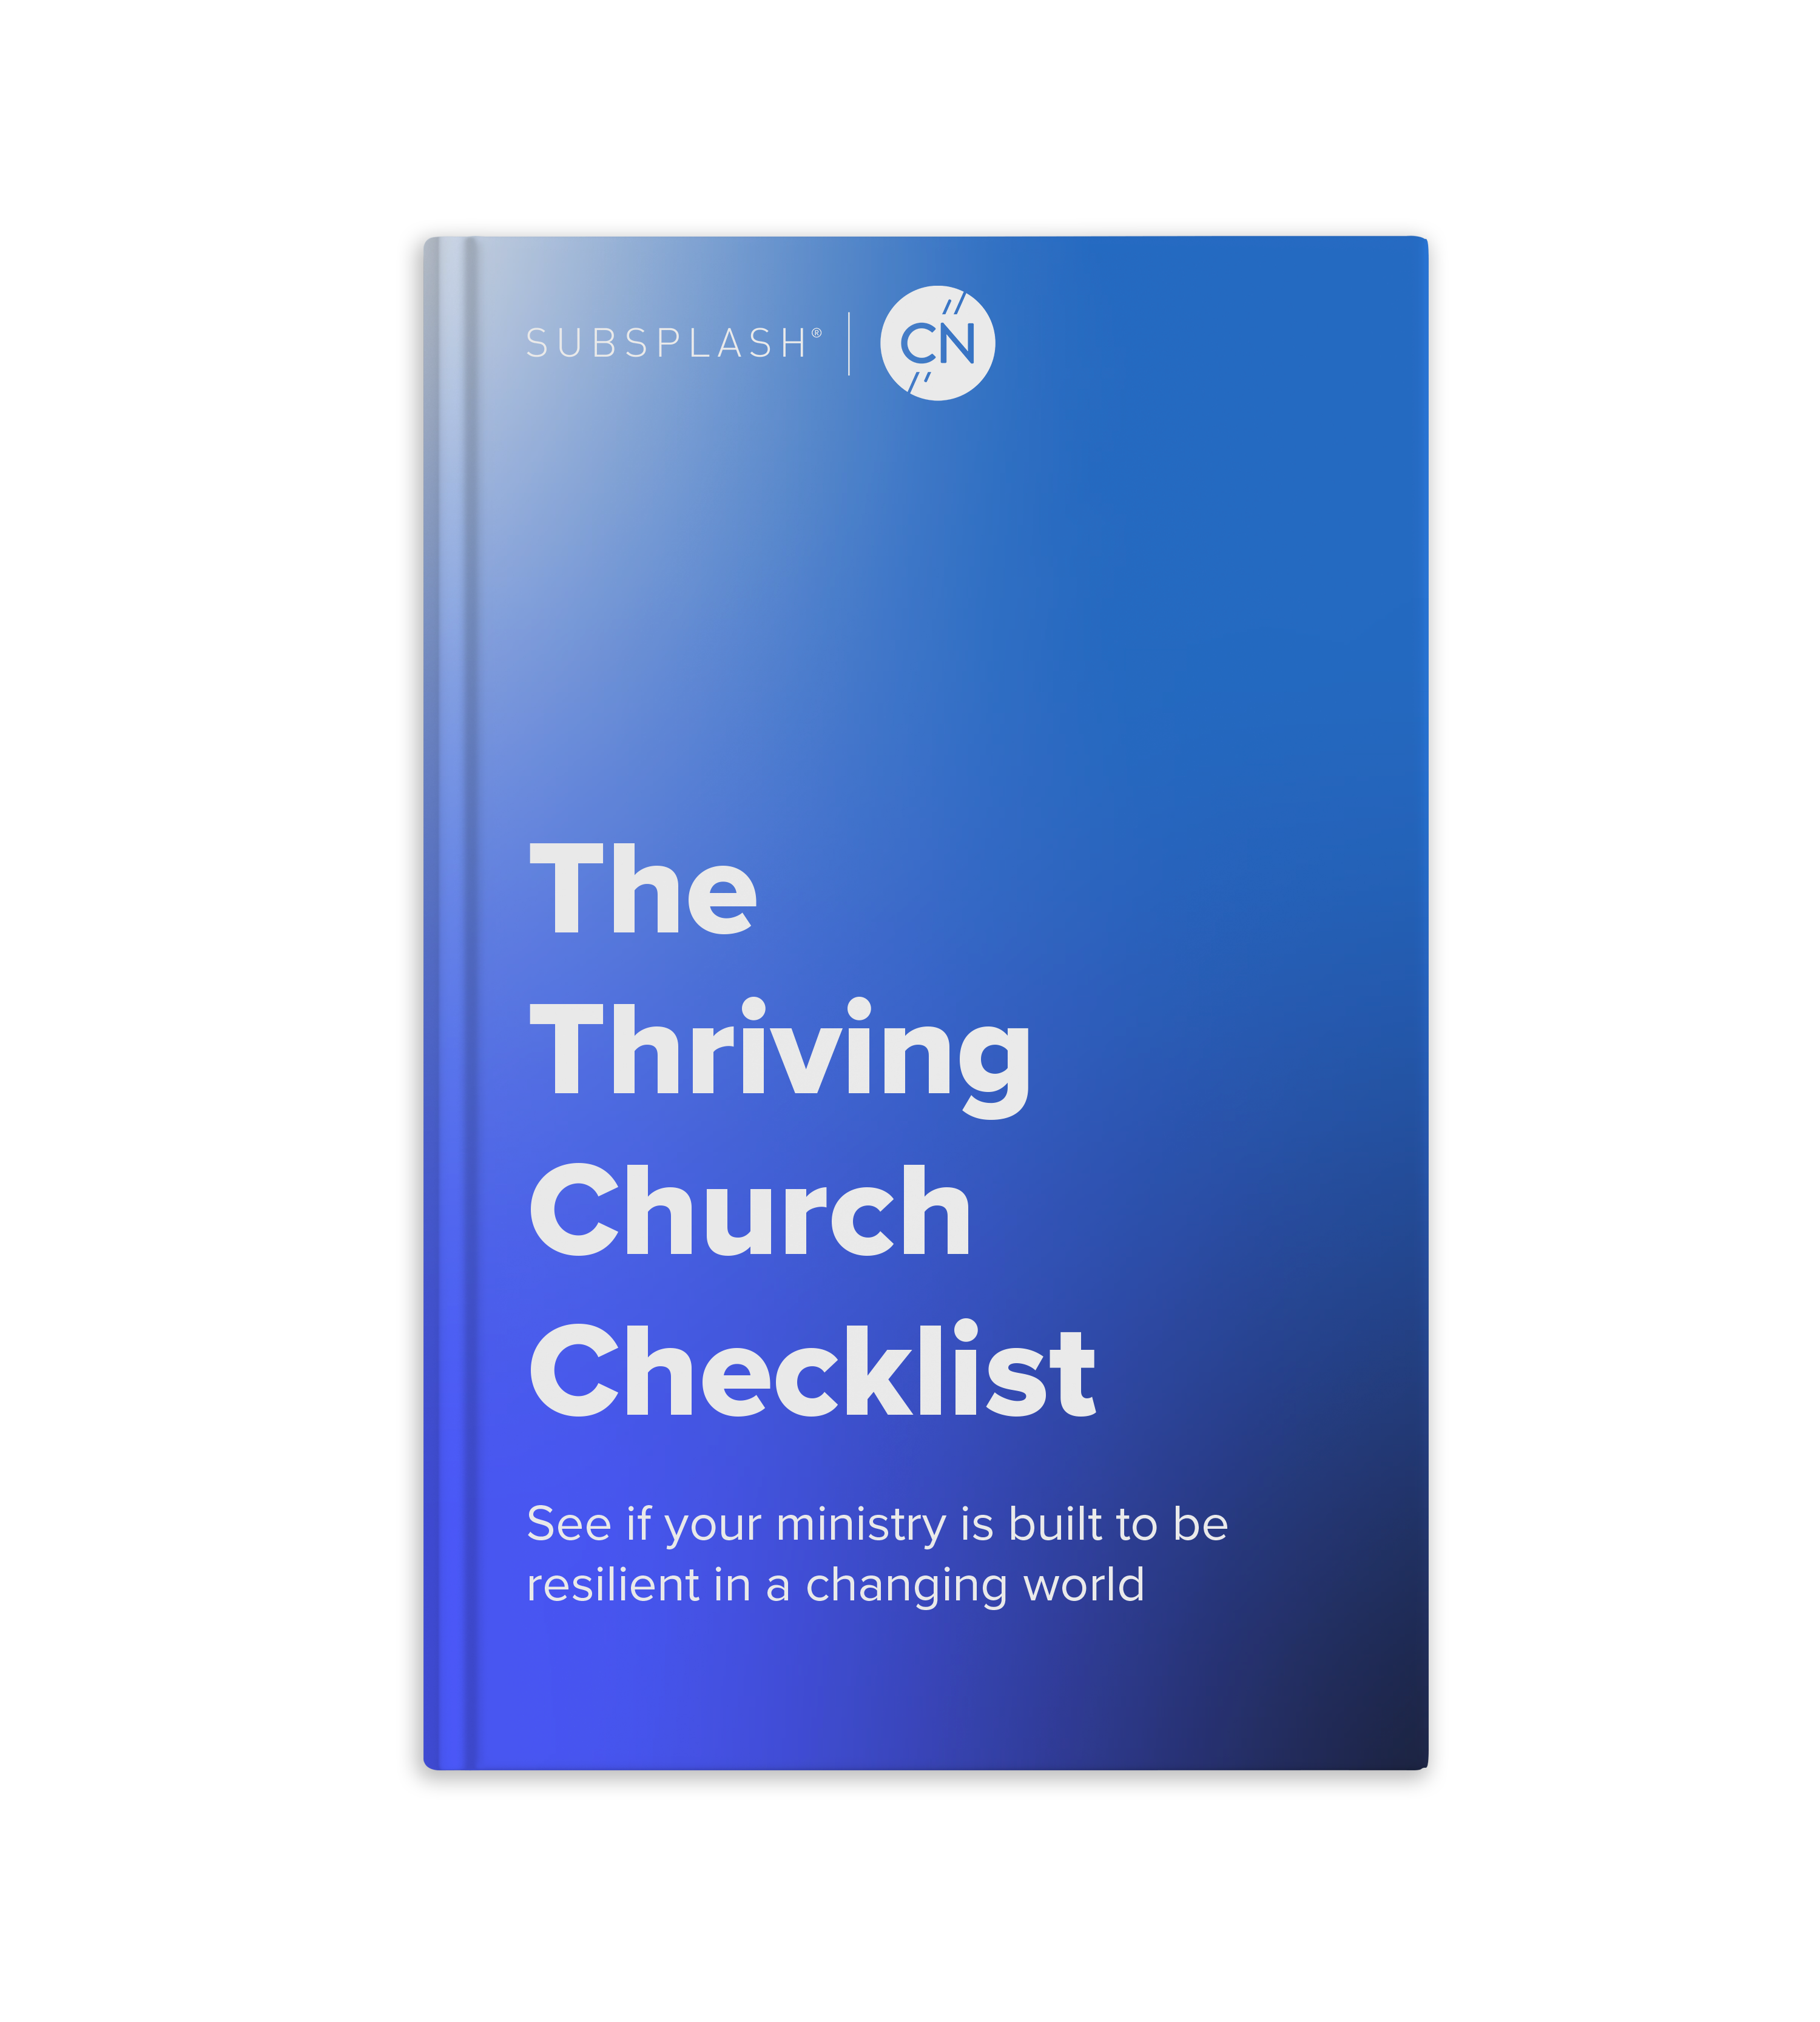 The Thriving Church Checklist